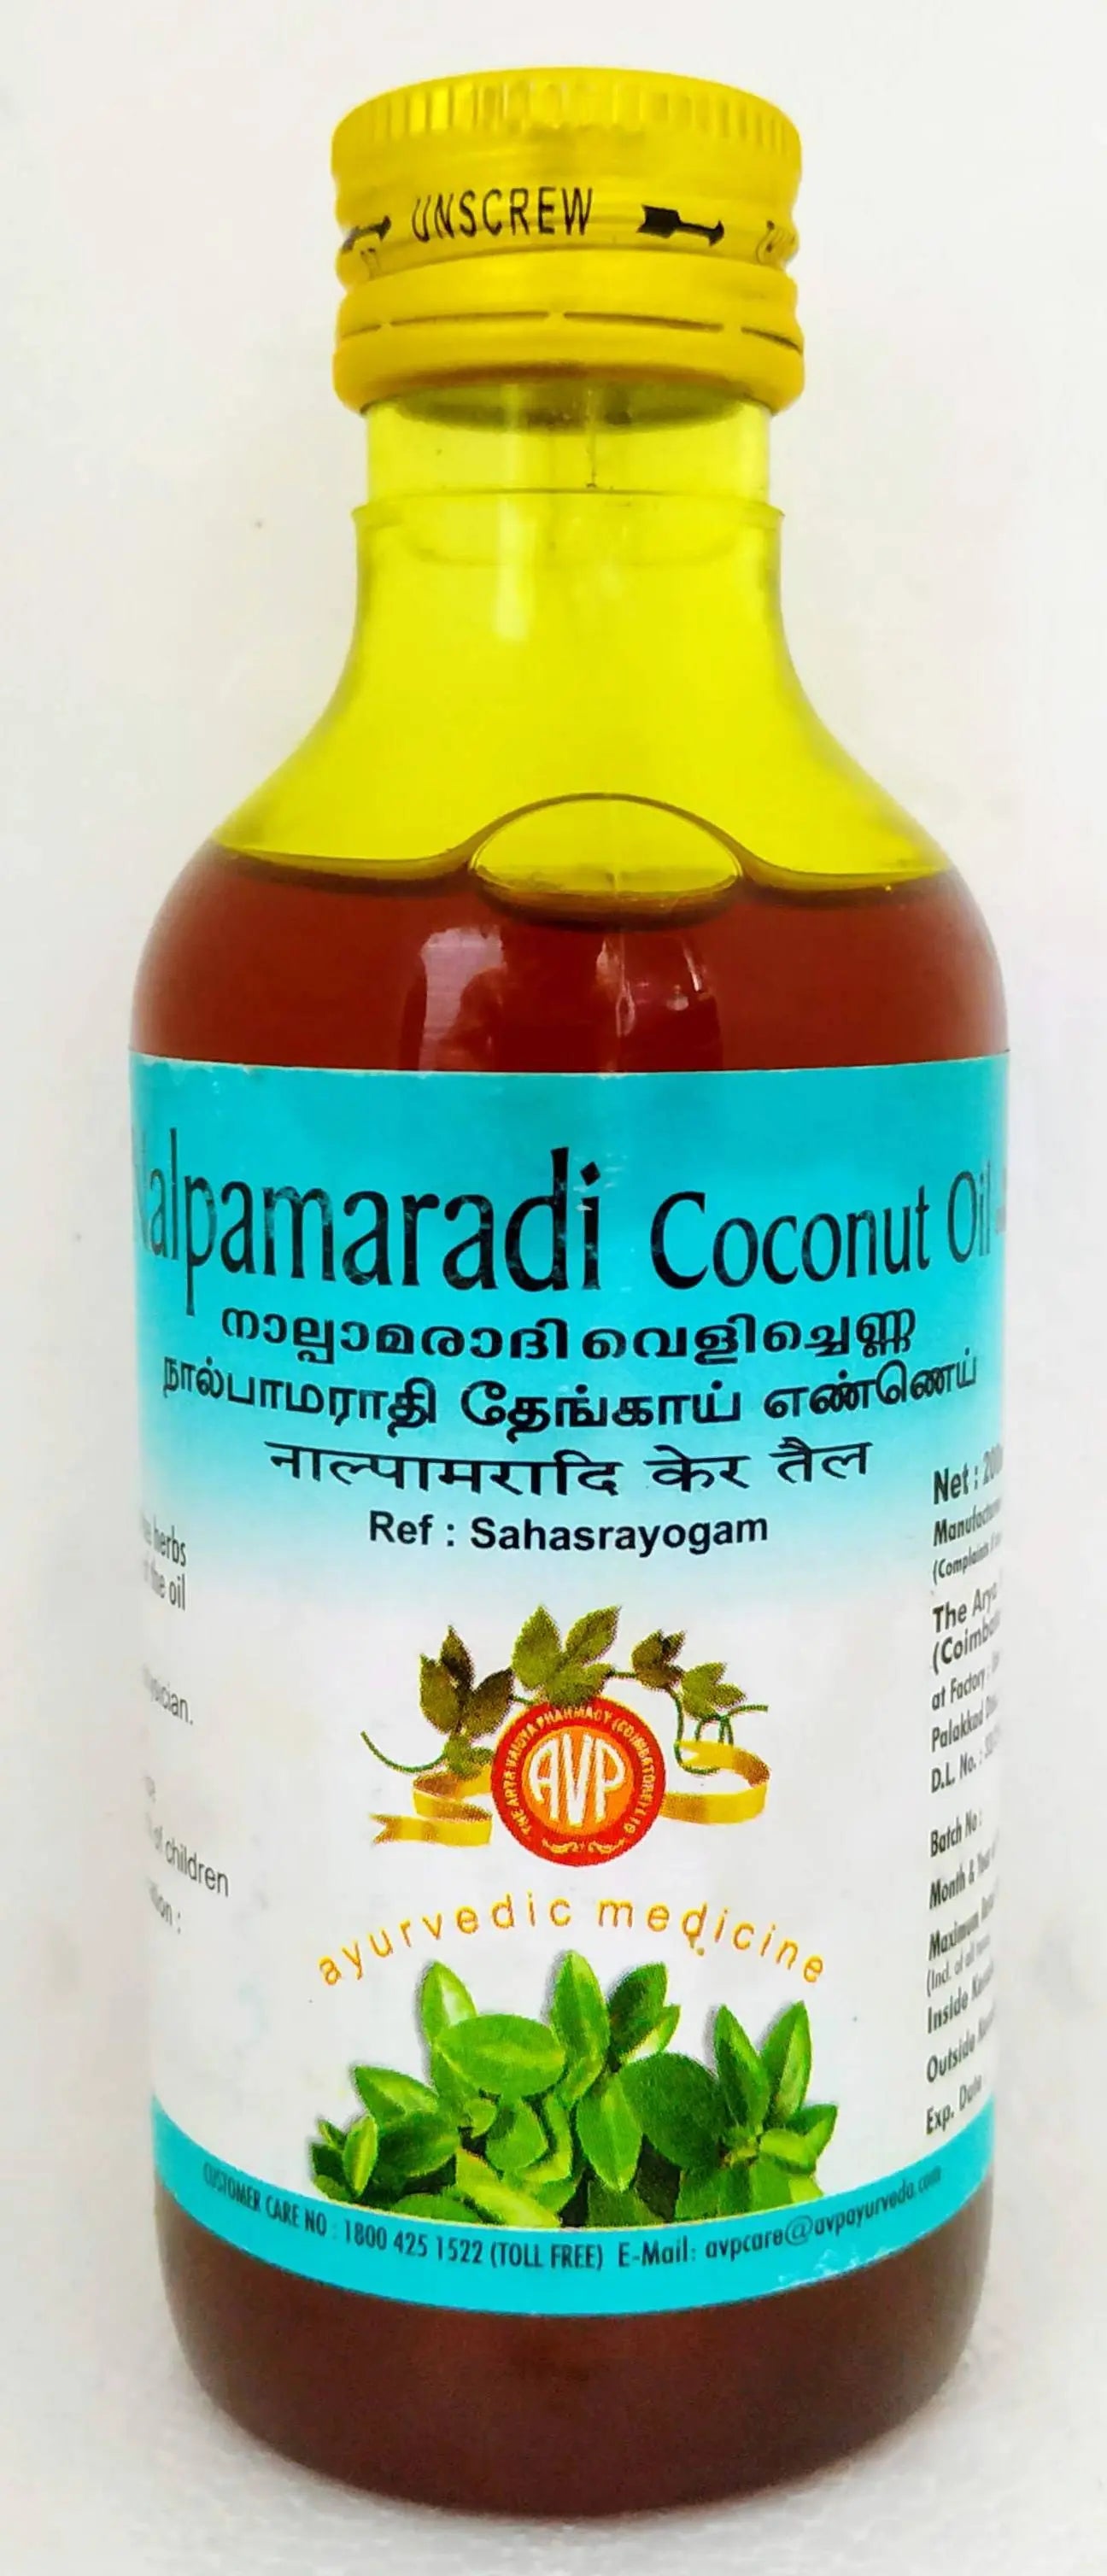 Nalpamaradi Coconut Oil 200ml AVP